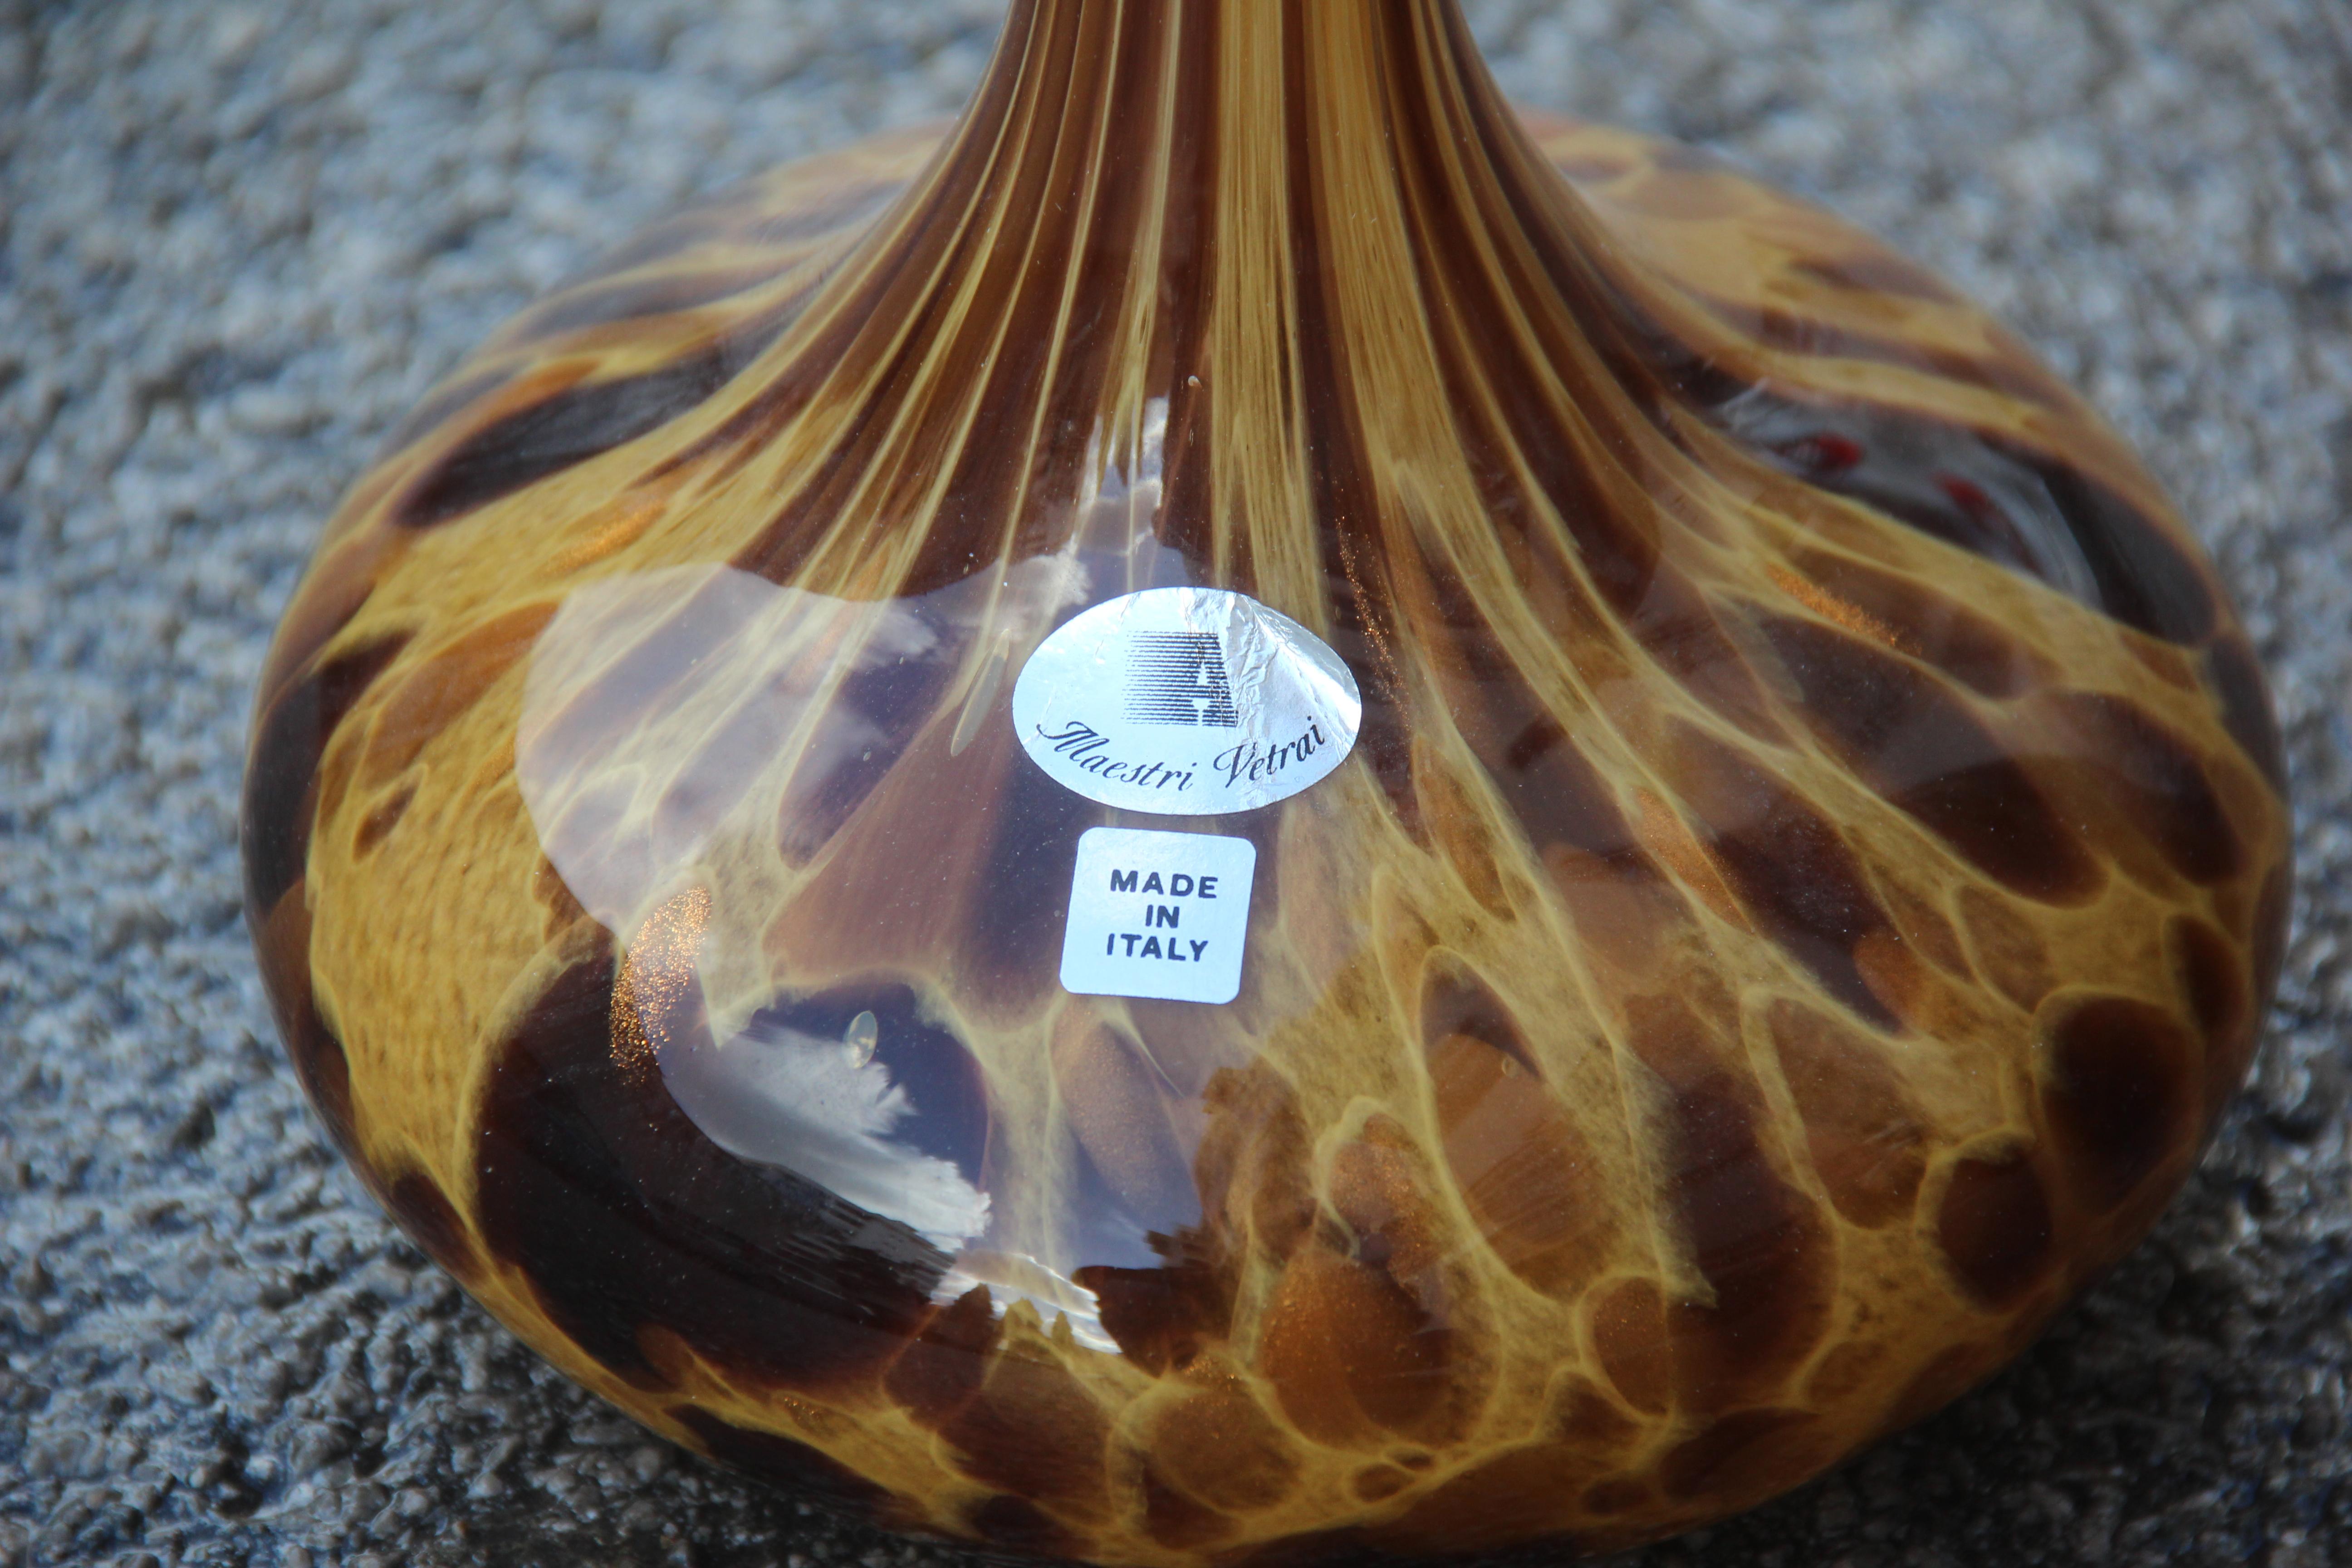 Große Flaschen in Murano-Glas gefleckt Dekoration Venturina, gelbe Farbe Sülze.
Maße: Durchmesser kleine Vase cm.12.